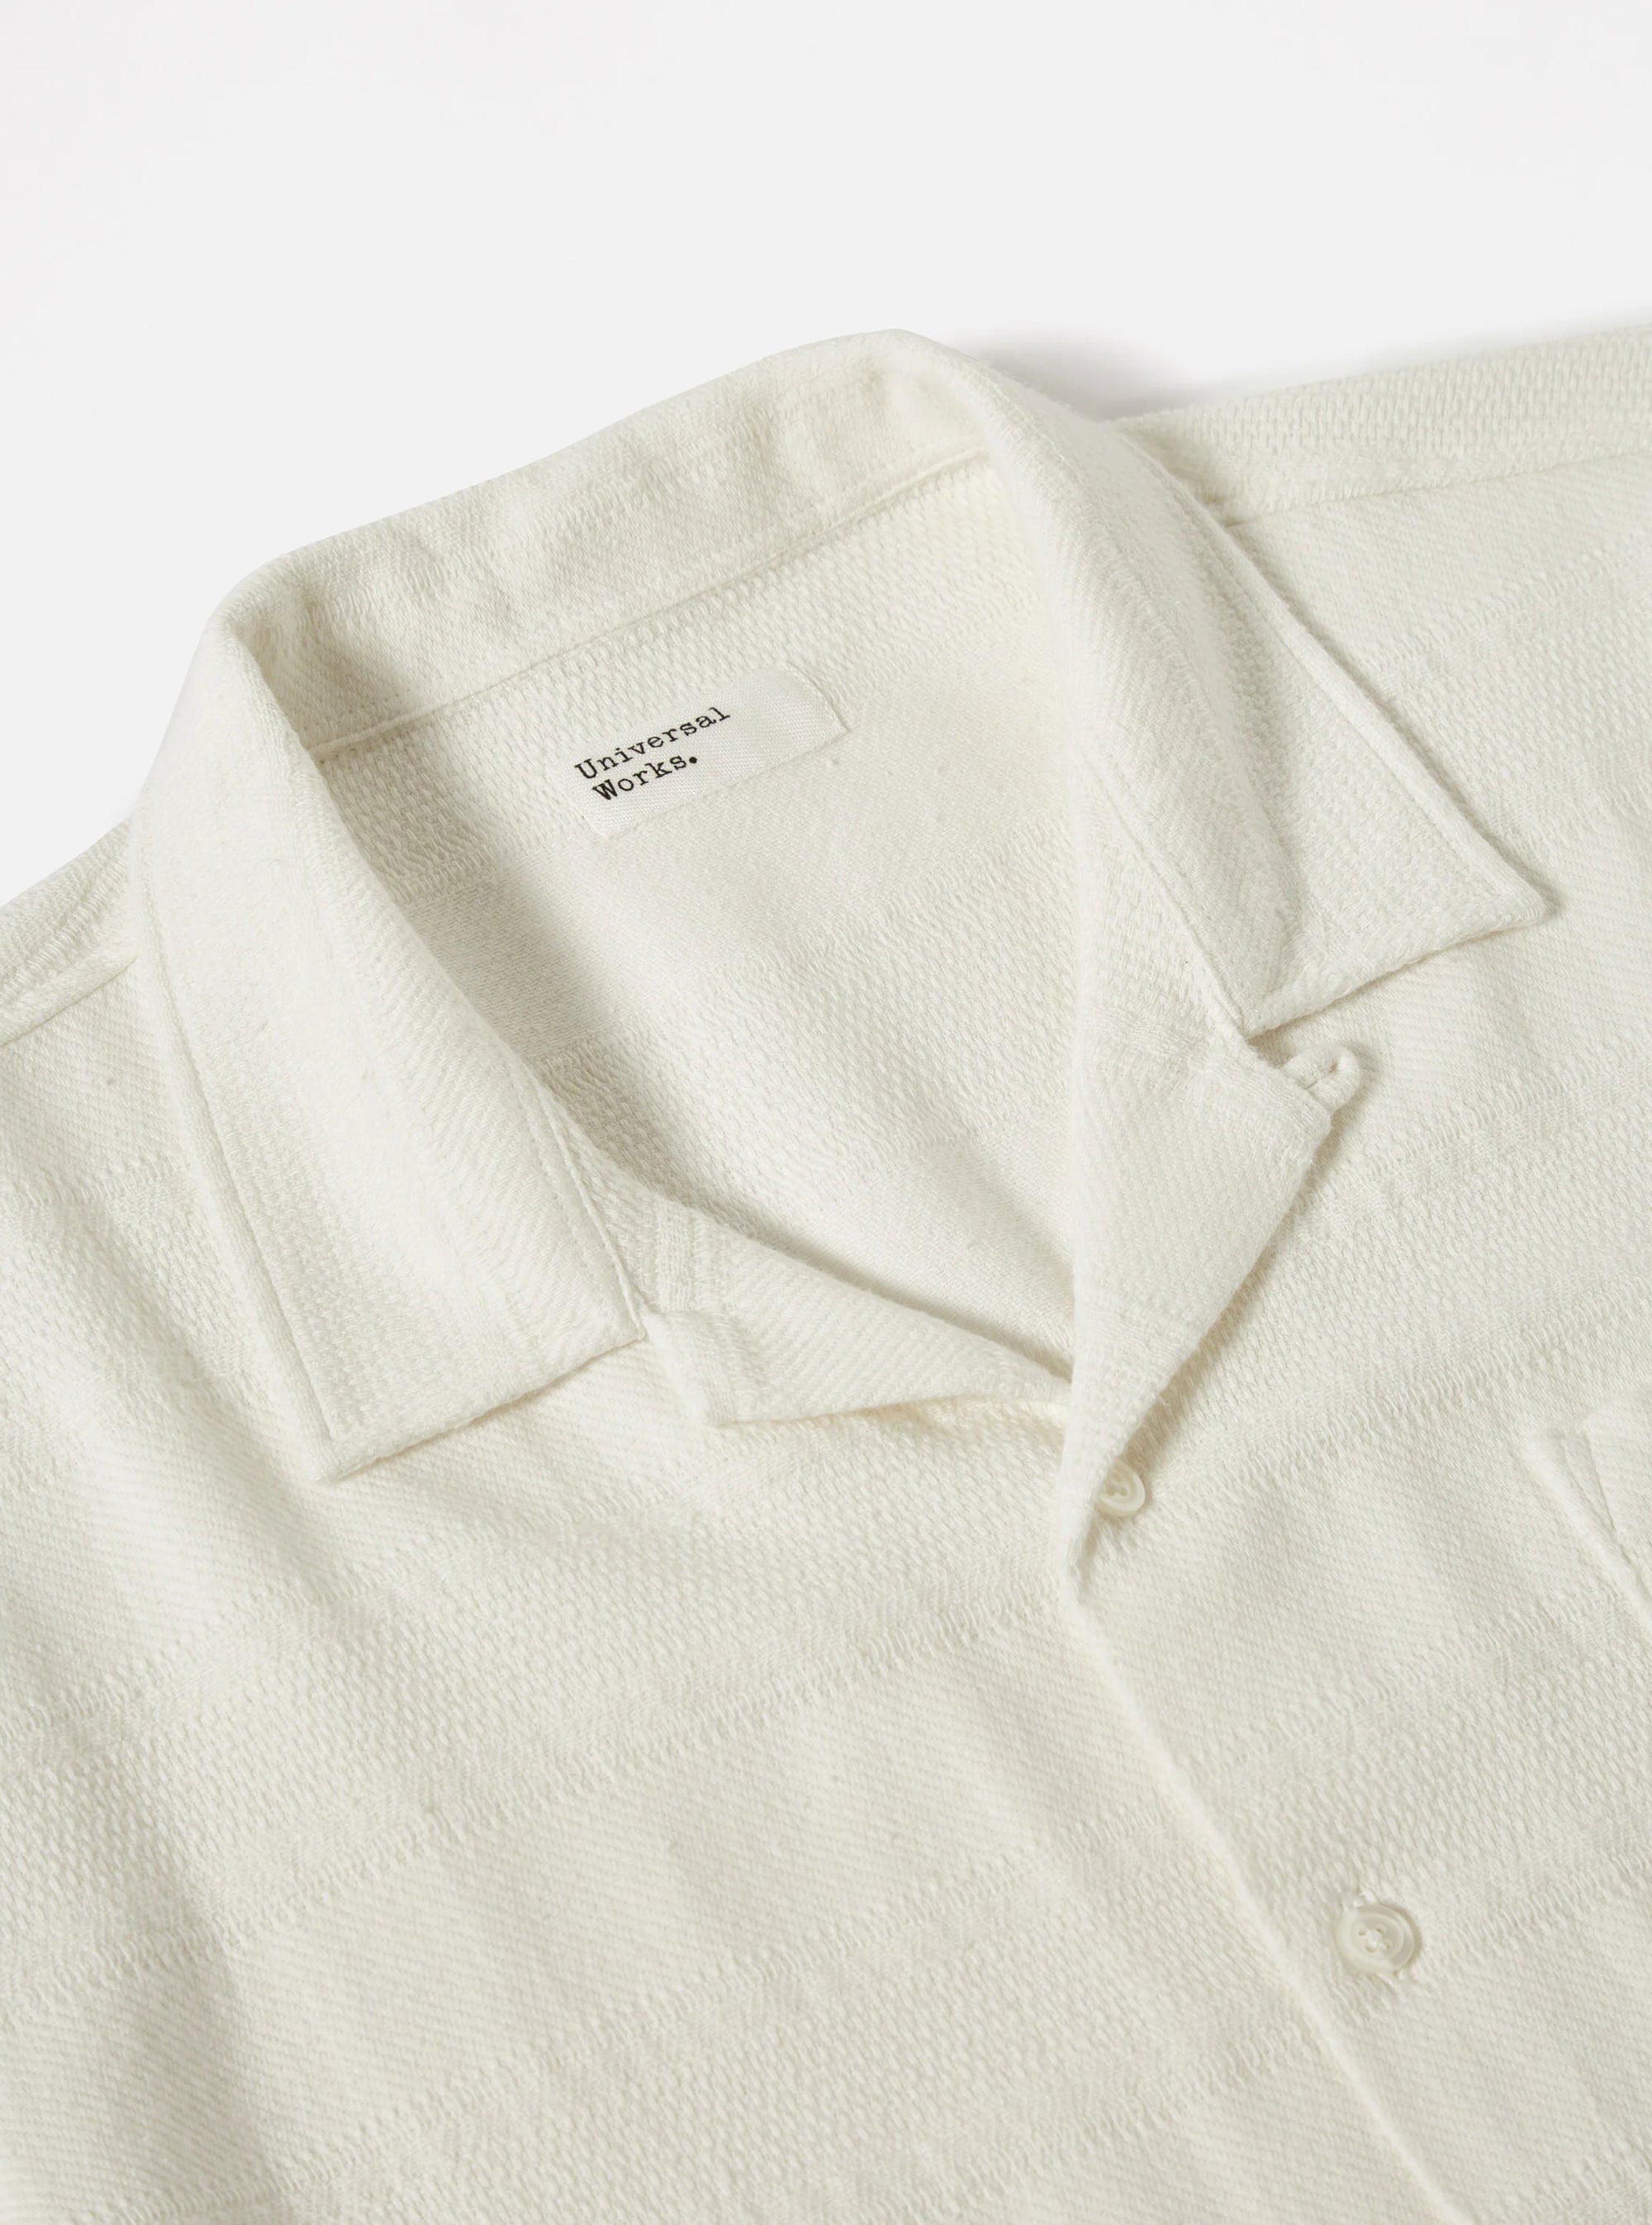 Road Shirt - White Tipzzi Stripe